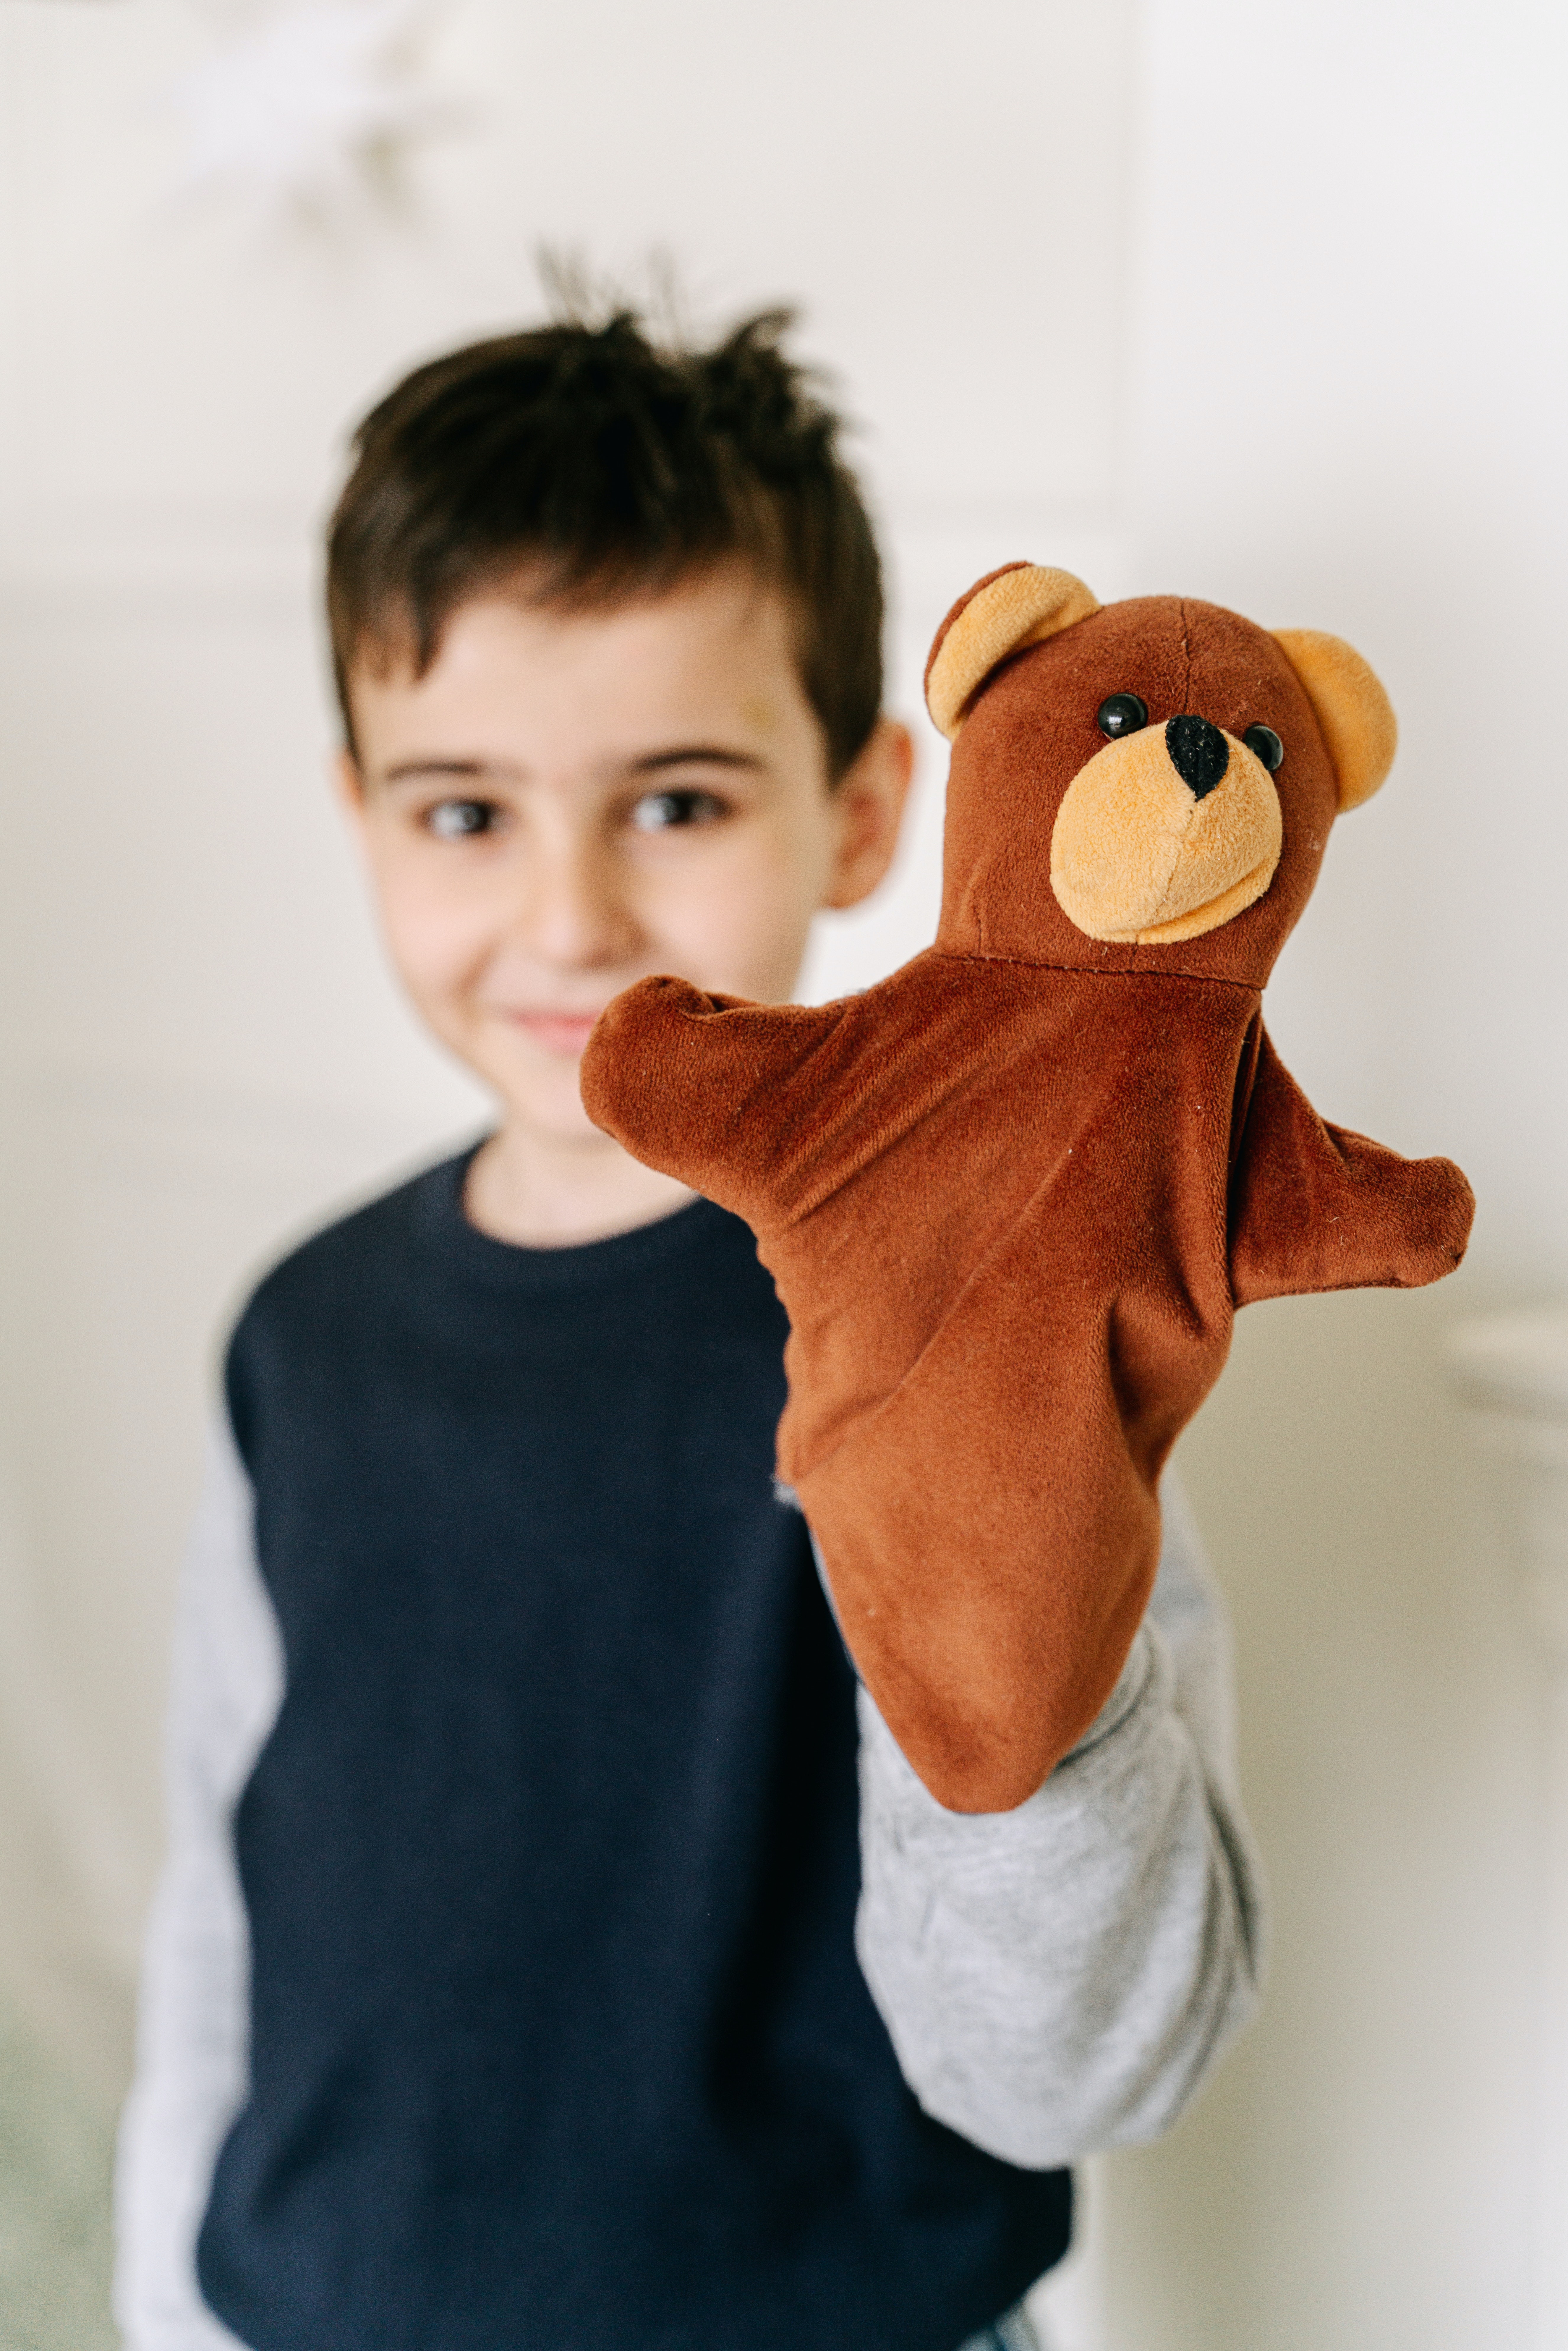 La imagen muestra un niño sonriendo con una marioneta de mano, un osito marrón